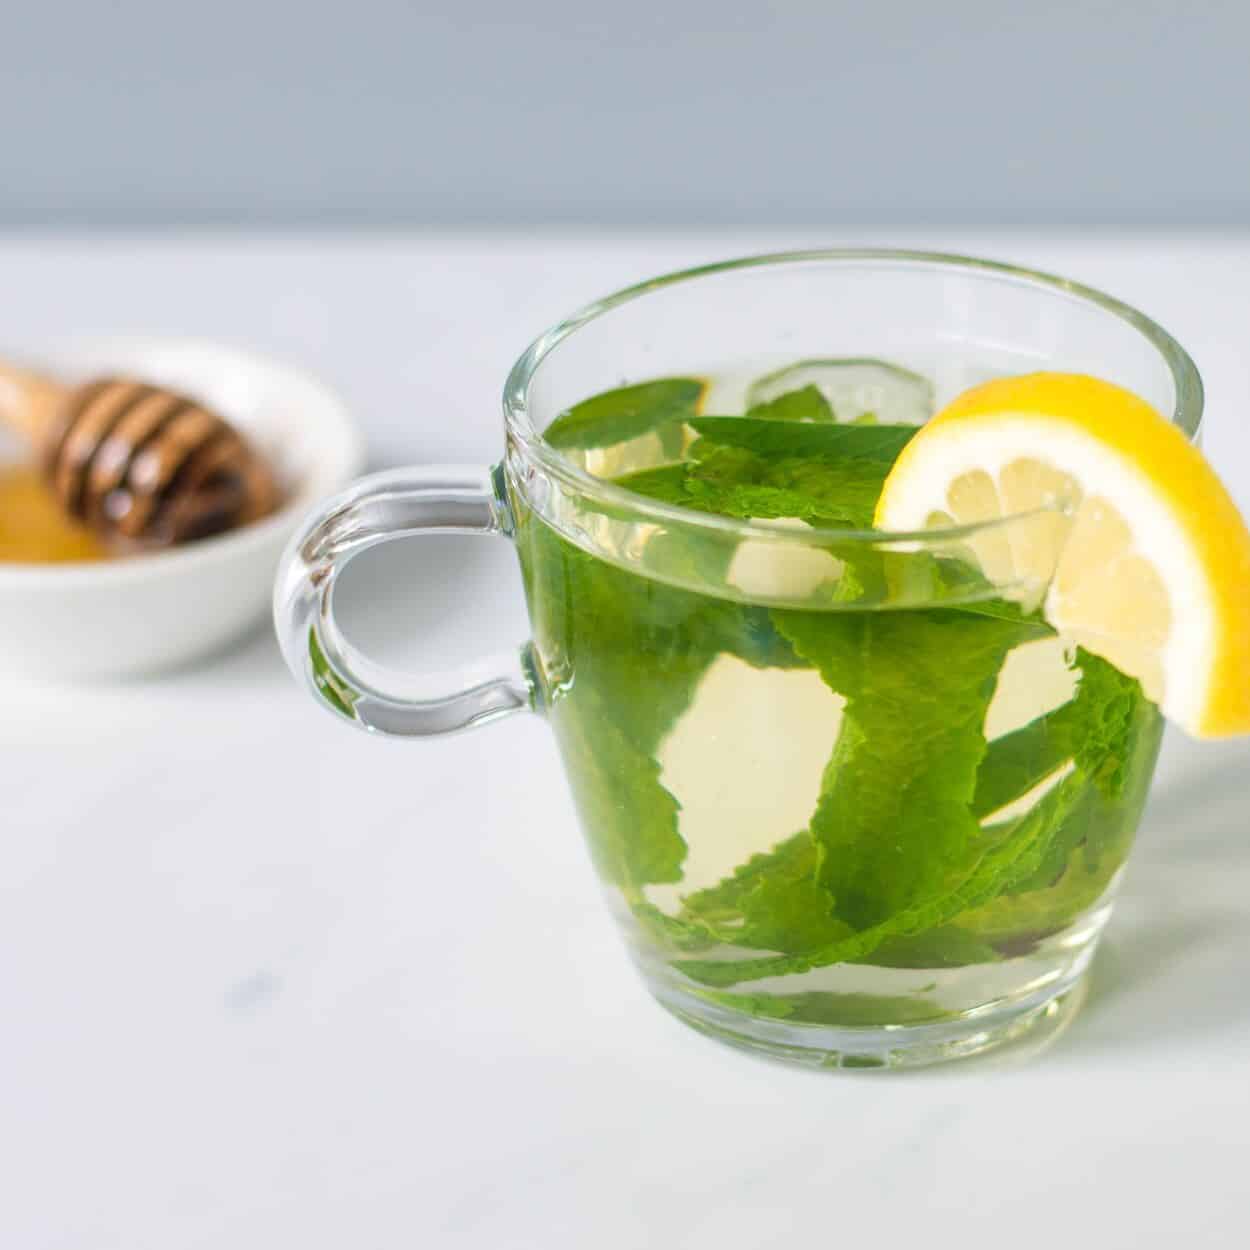  chá de hortelã benefícios para a saúde